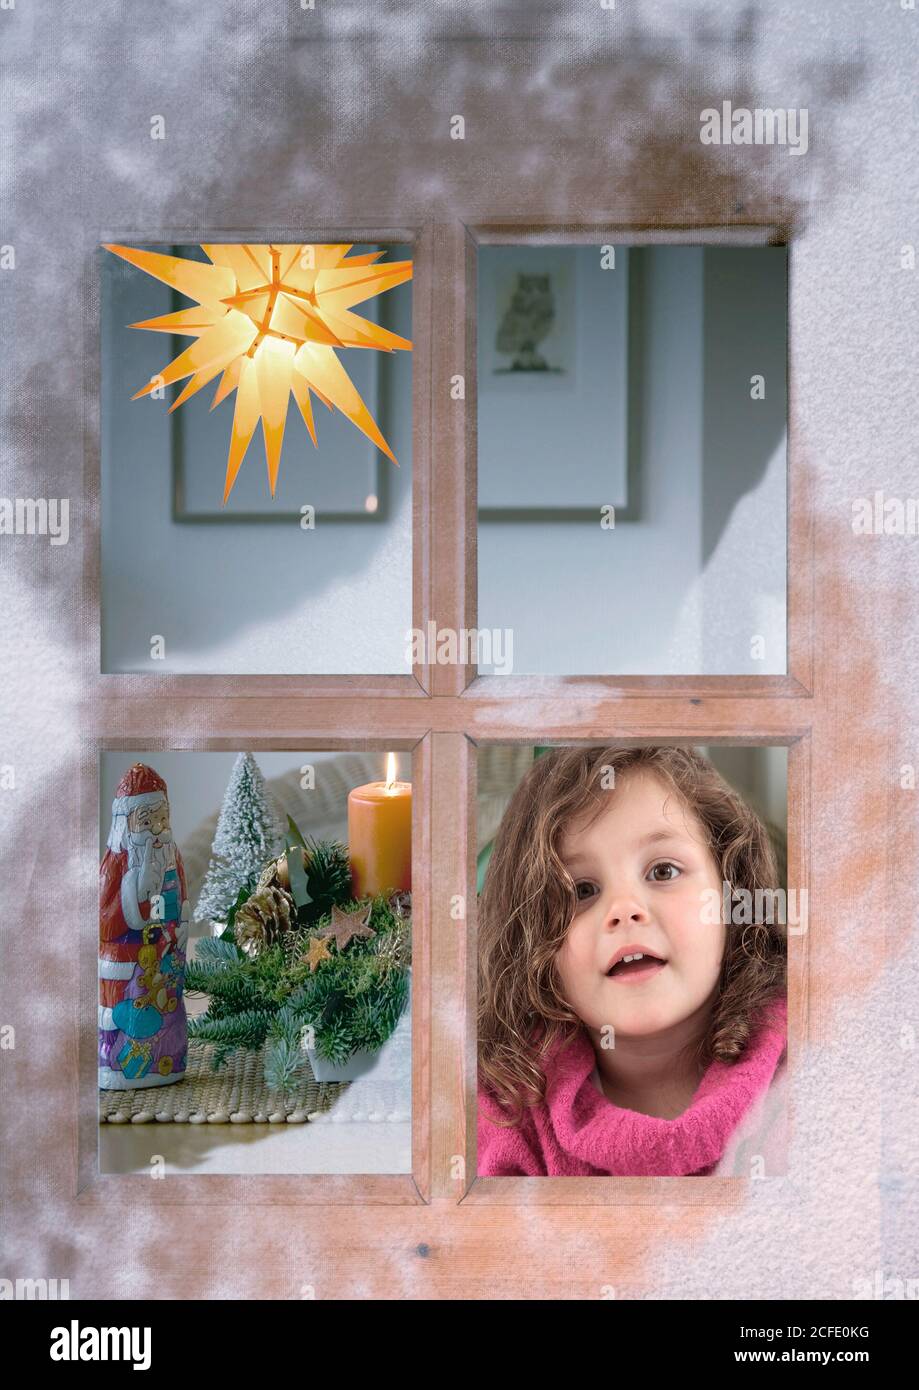 Fenster, Schnee, Kind, Advent, weihnachten, weihnachtsdekoration Stockfoto